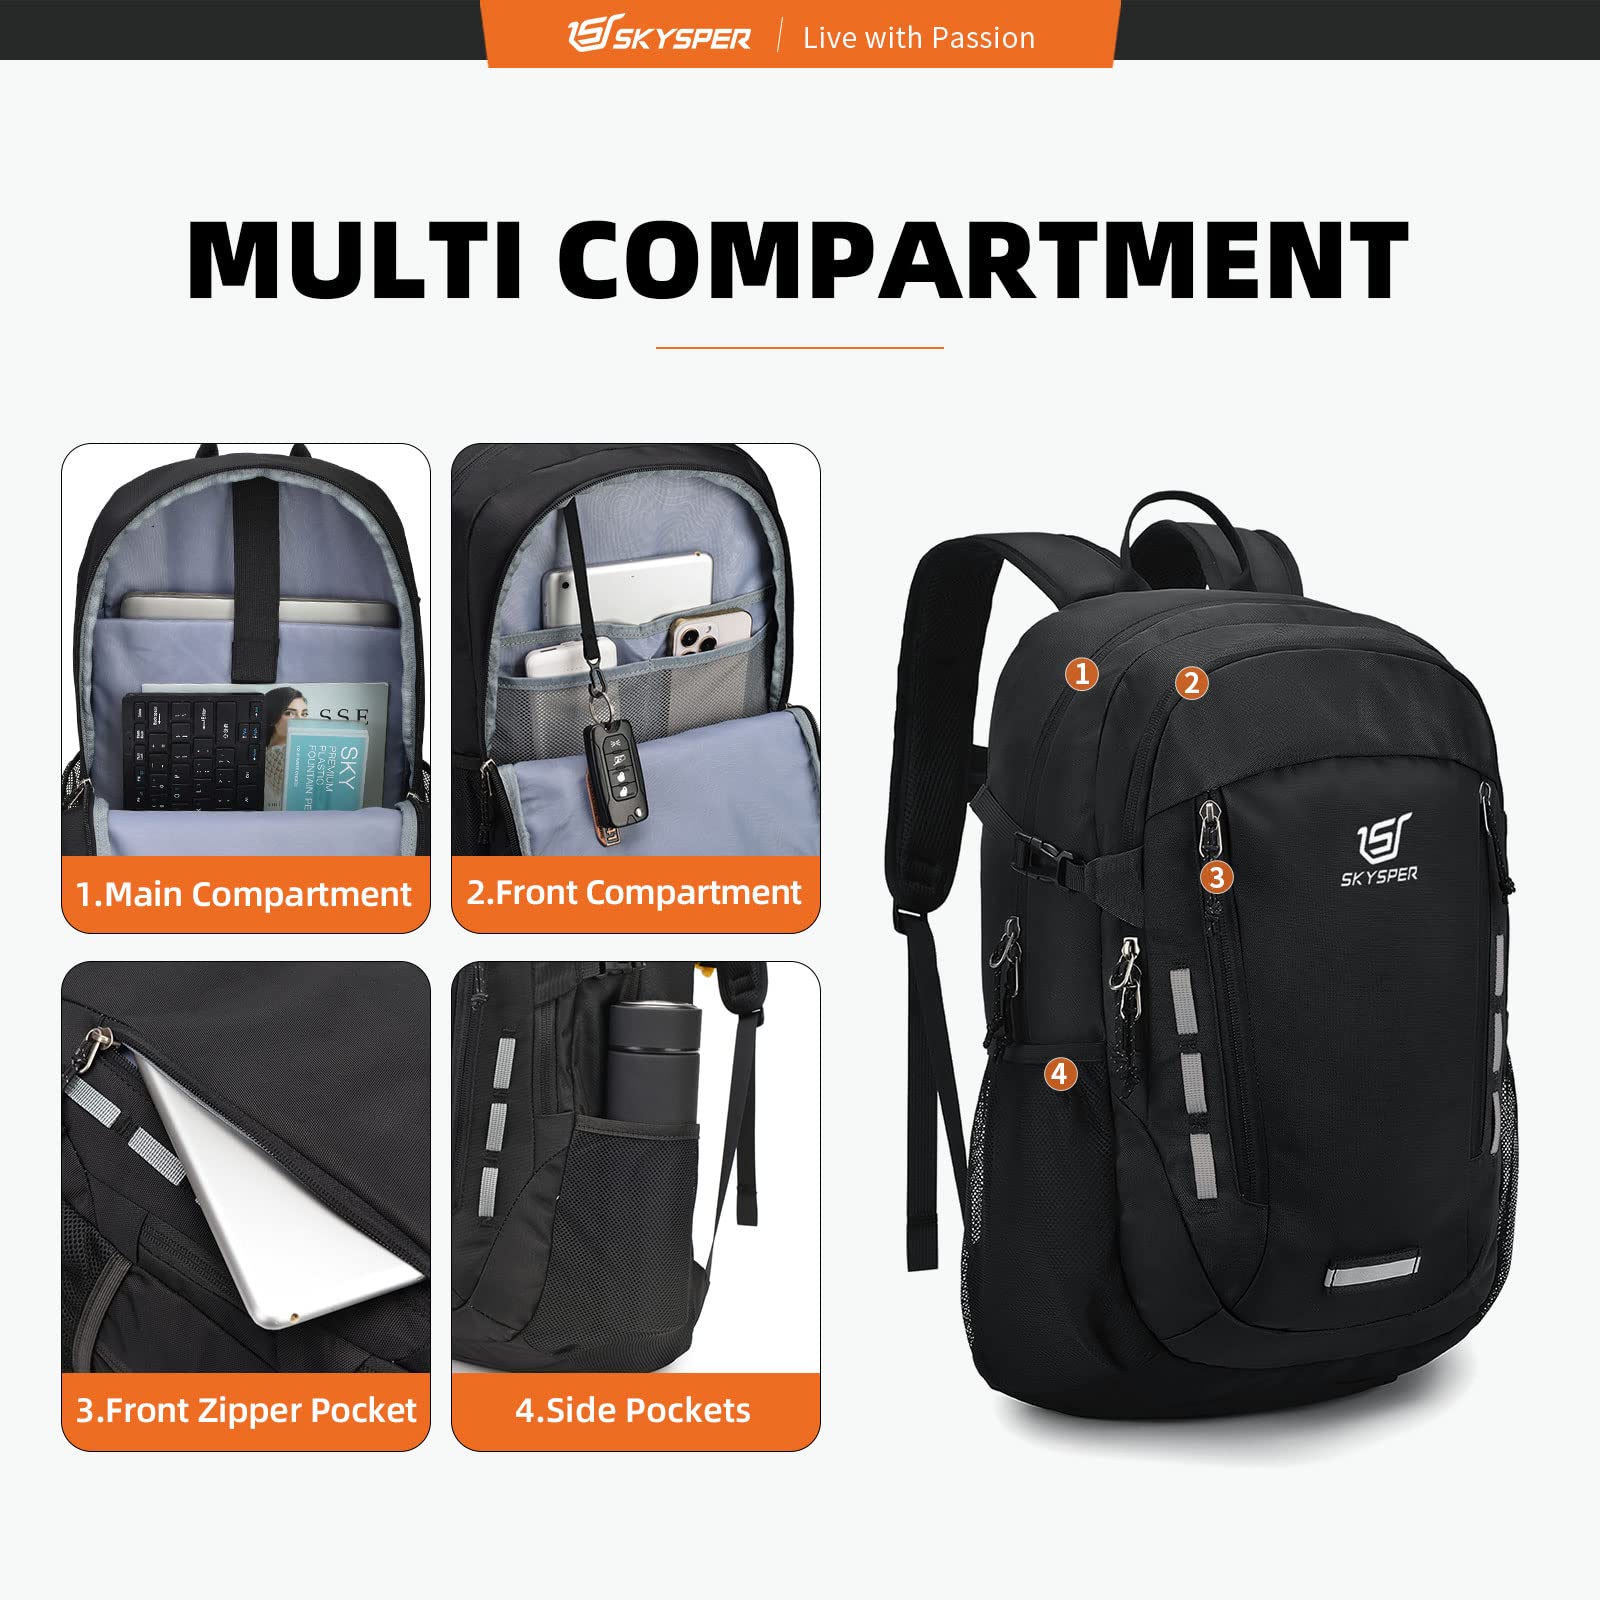 SKYSPER Laptop Backpack 30L Travel Backpack for Women Men Work Business Backpack Bookbag Fits up to 17 Inch Laptop(Grey)